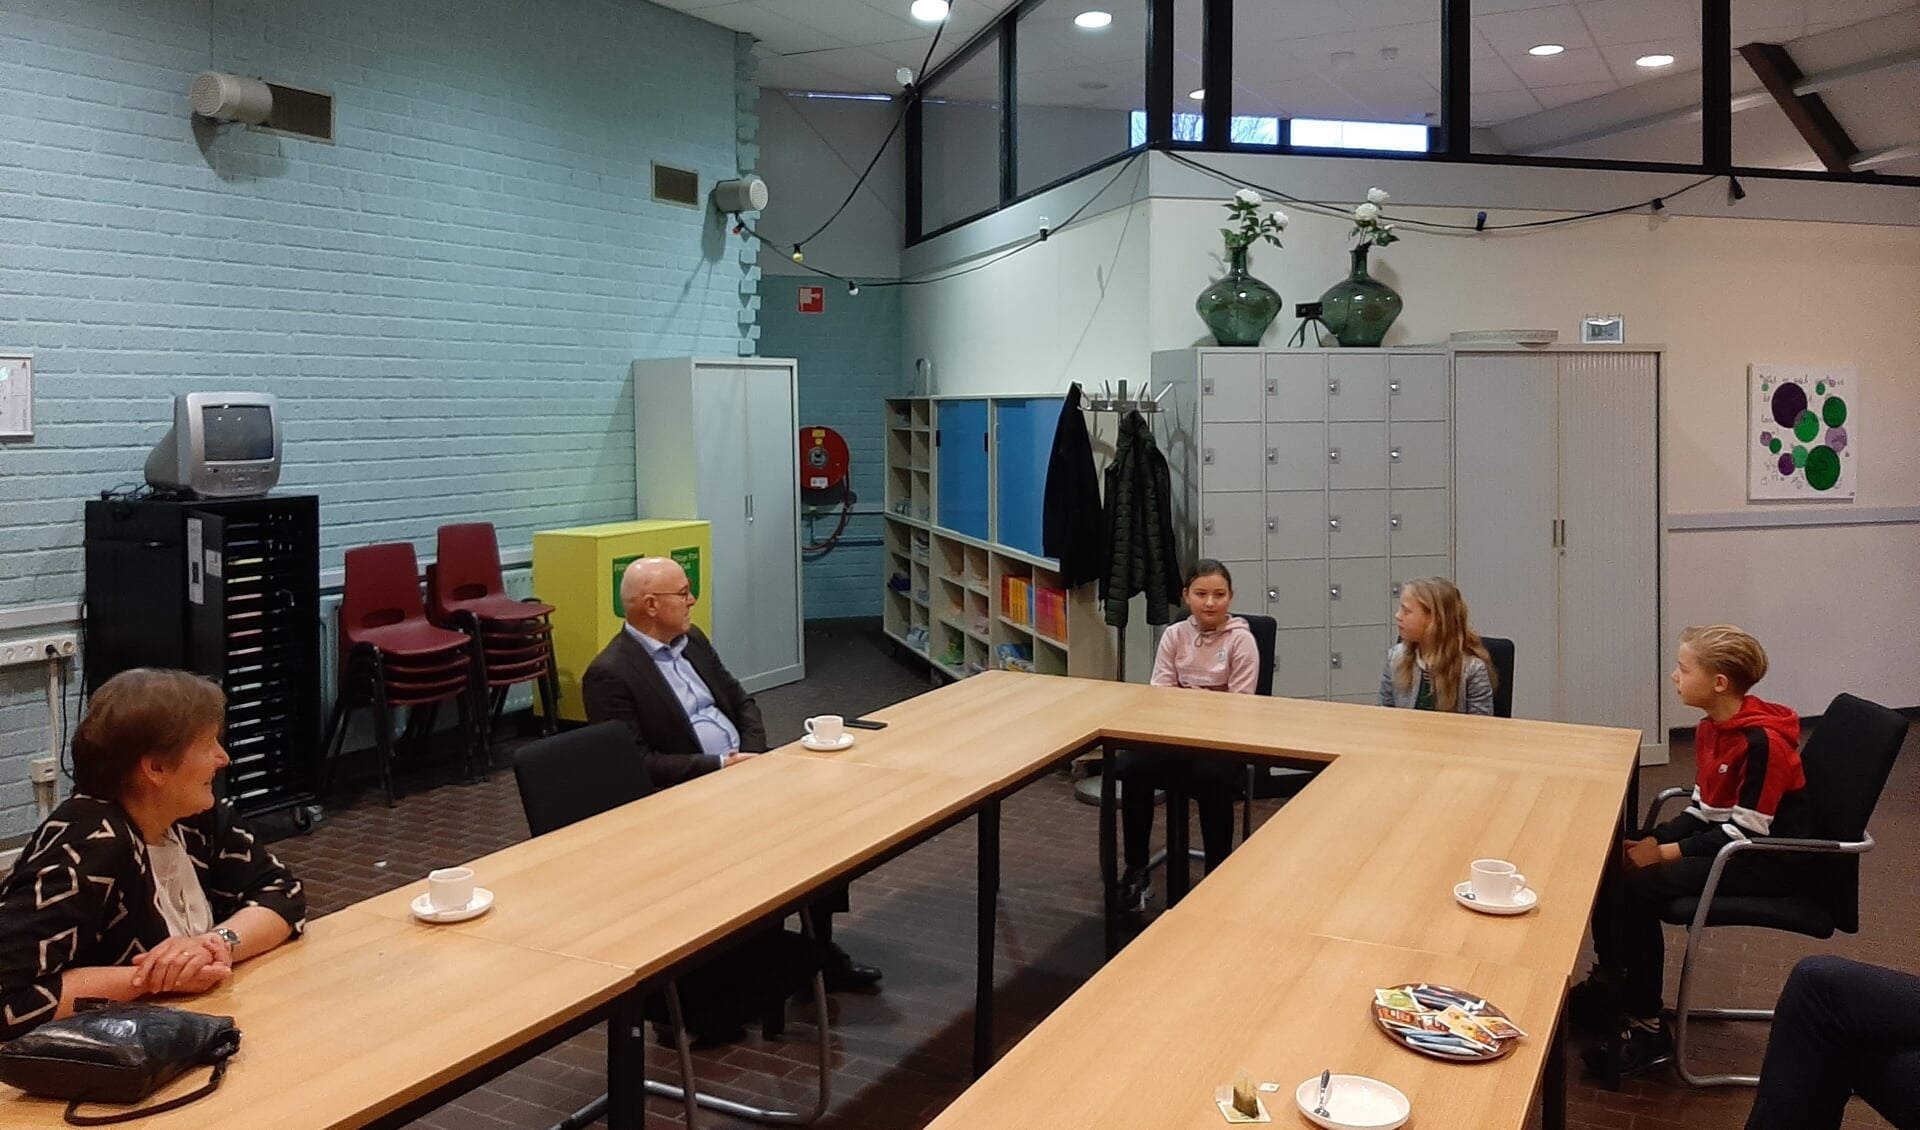 Wethouder Van der Pas en Kees van Rooij in gesprek met Dexter, Evi en Jara. Zij zitten alle drie in groep 8 van basisschool De Bunders.